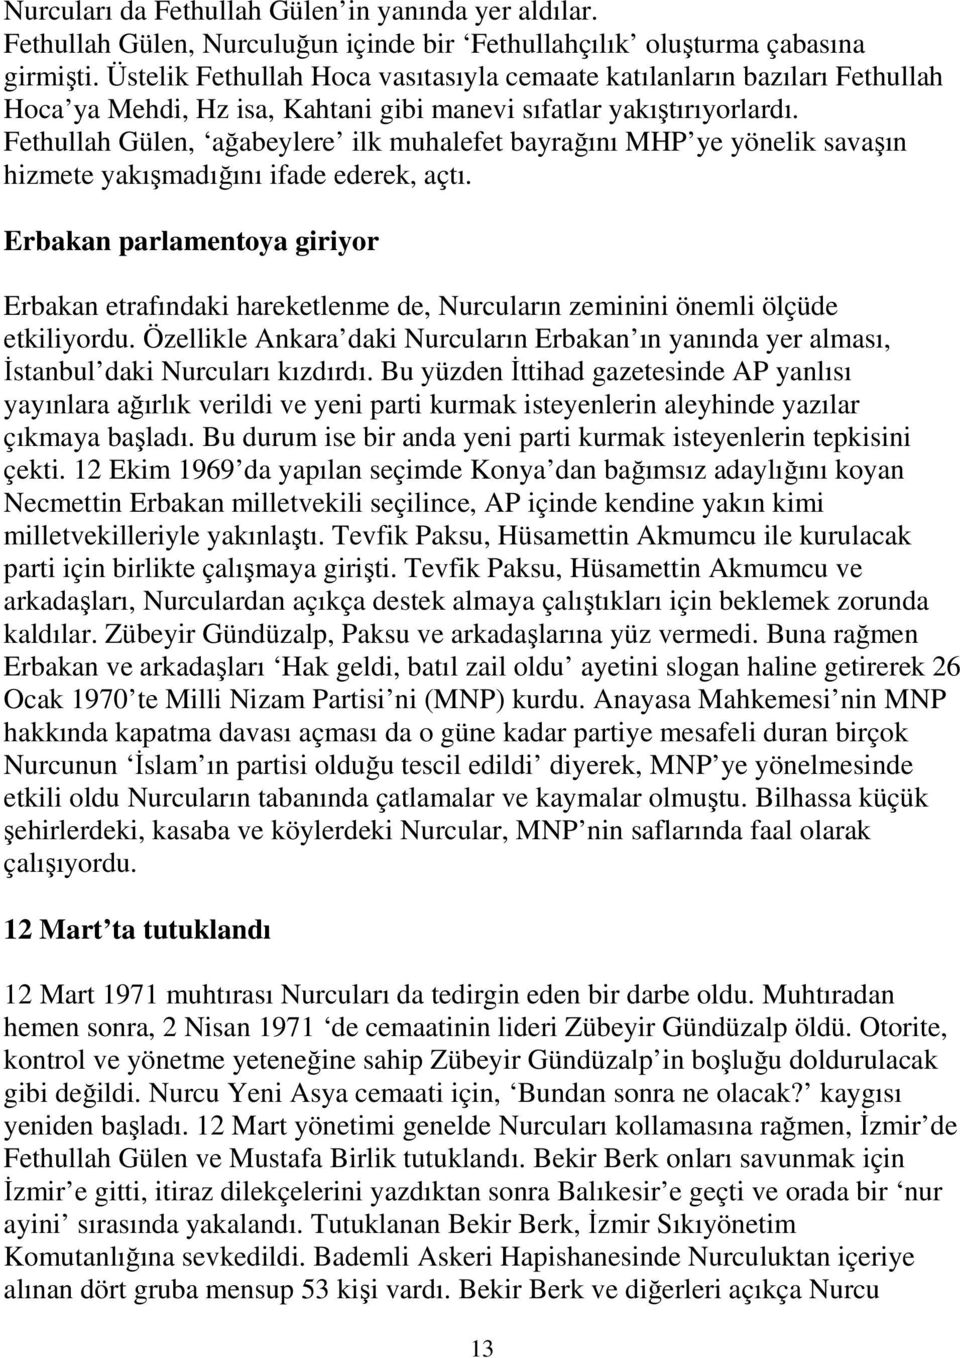 Fethullah Gülen, ağabeylere ilk muhalefet bayrağını MHP ye yönelik savaşın hizmete yakışmadığını ifade ederek, açtı.